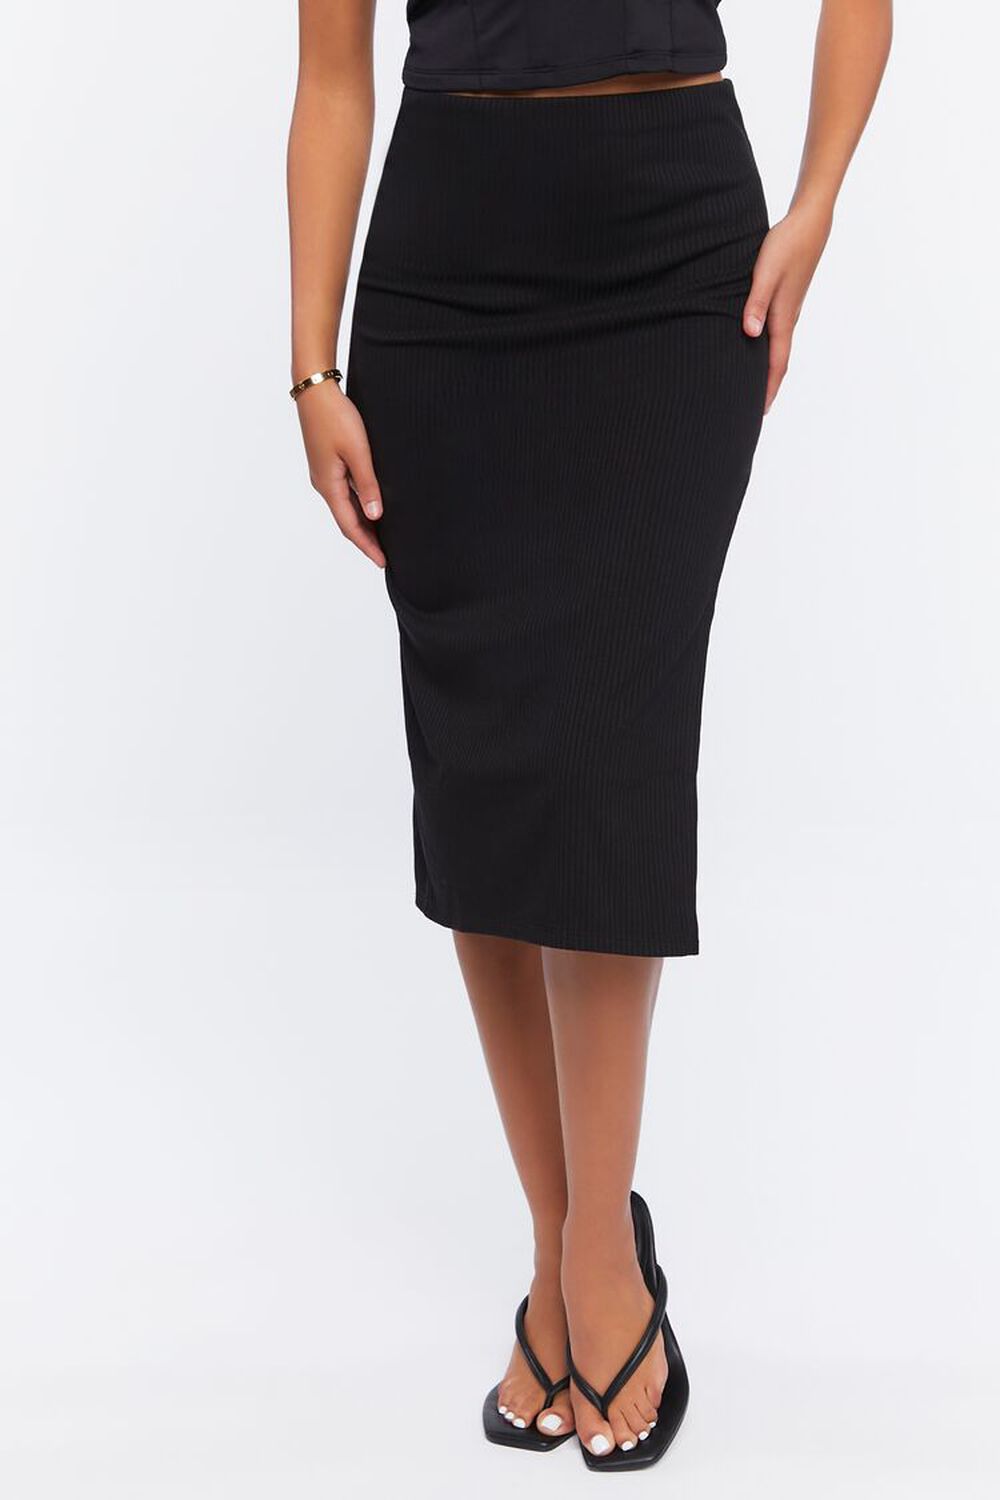 BLACK Side-Slit Midi Skirt, image 2